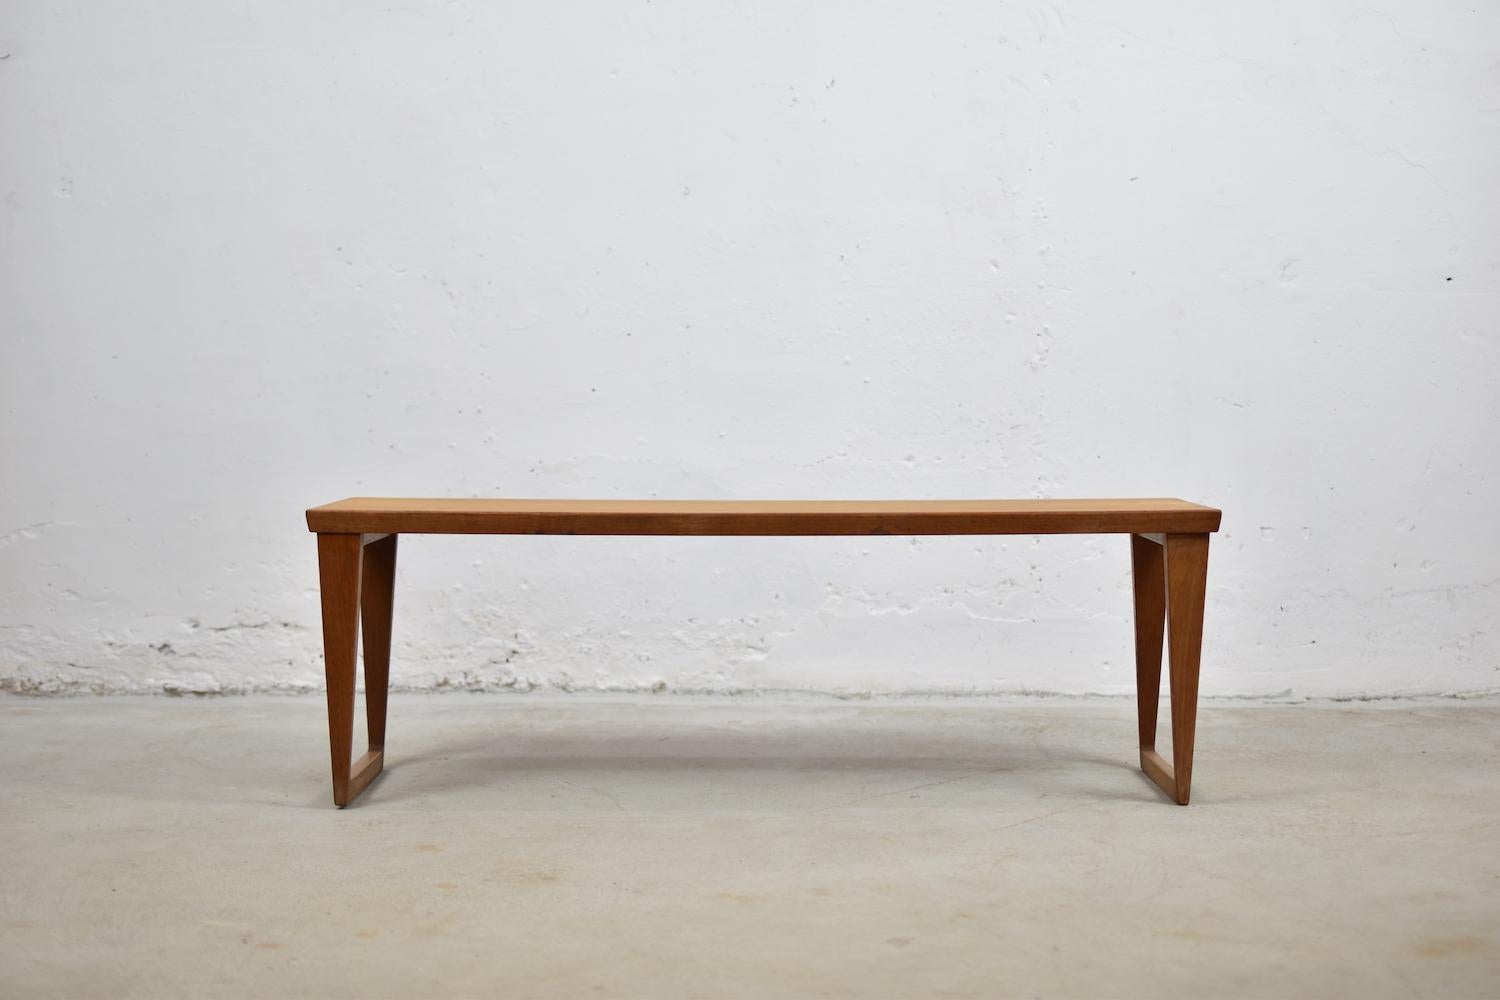 Scandinavian Modern Side Table Designed by Kai Kristiansen for Aksel Kjersgaard, Denmark, 1960s